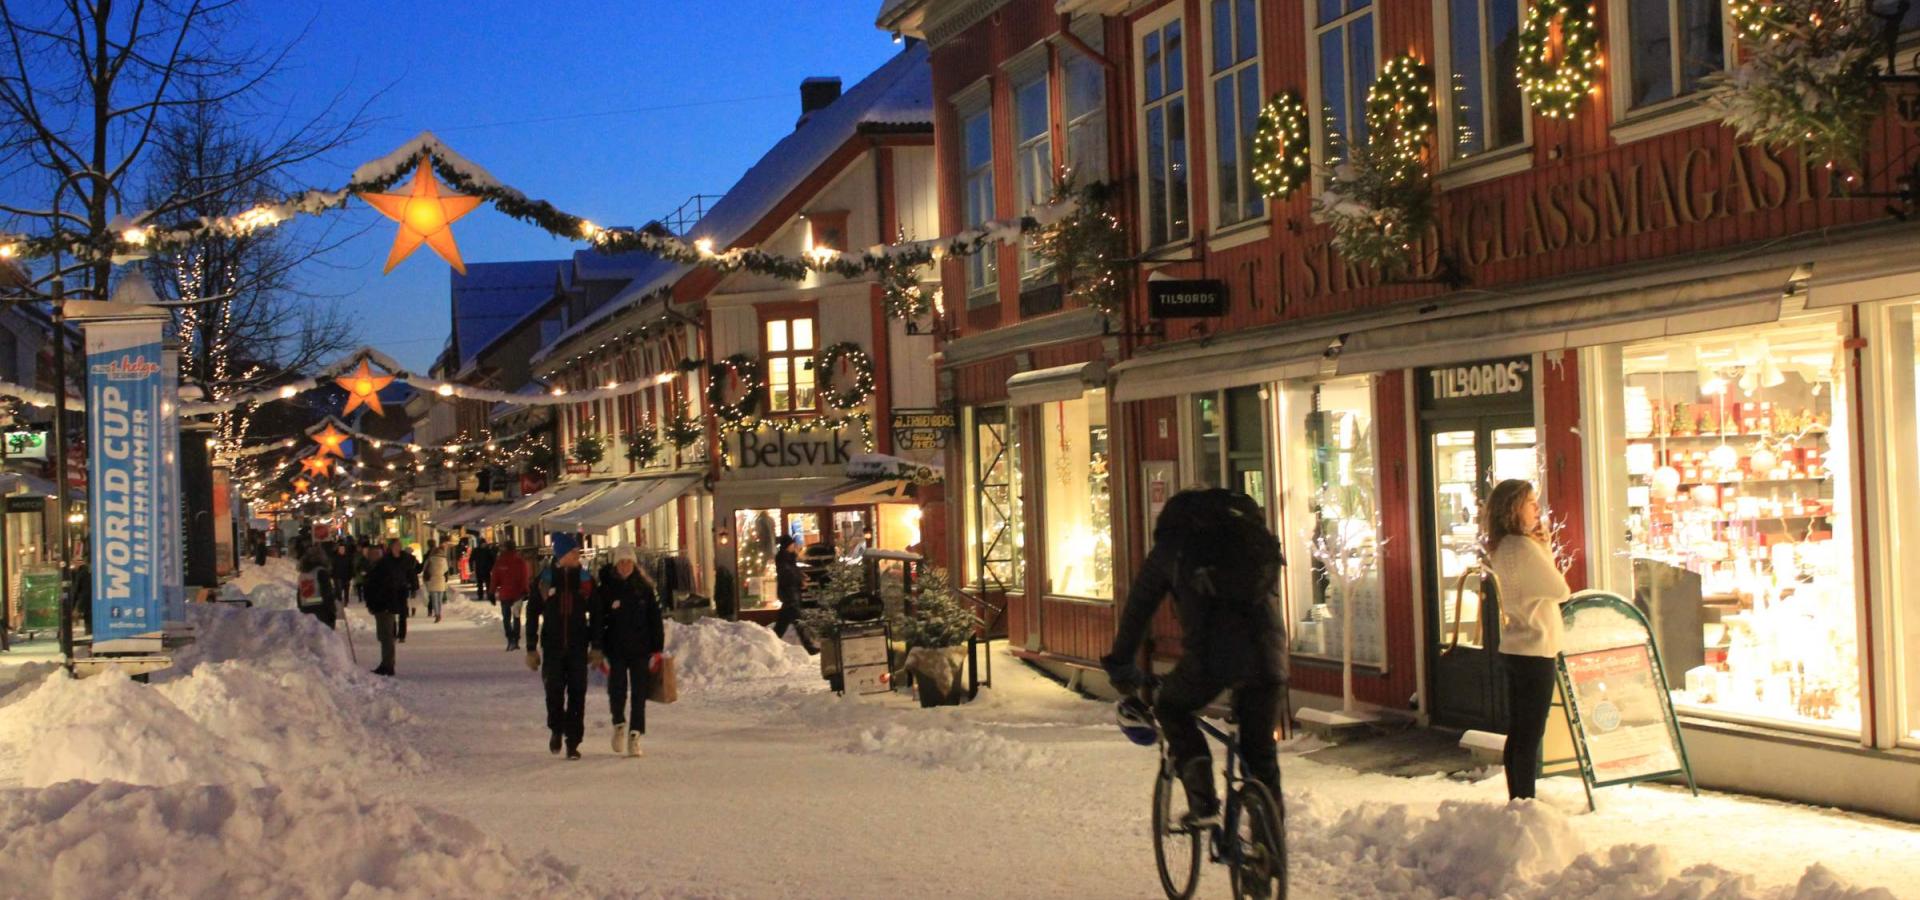 Opplev Lillehammer når dere er på julebord